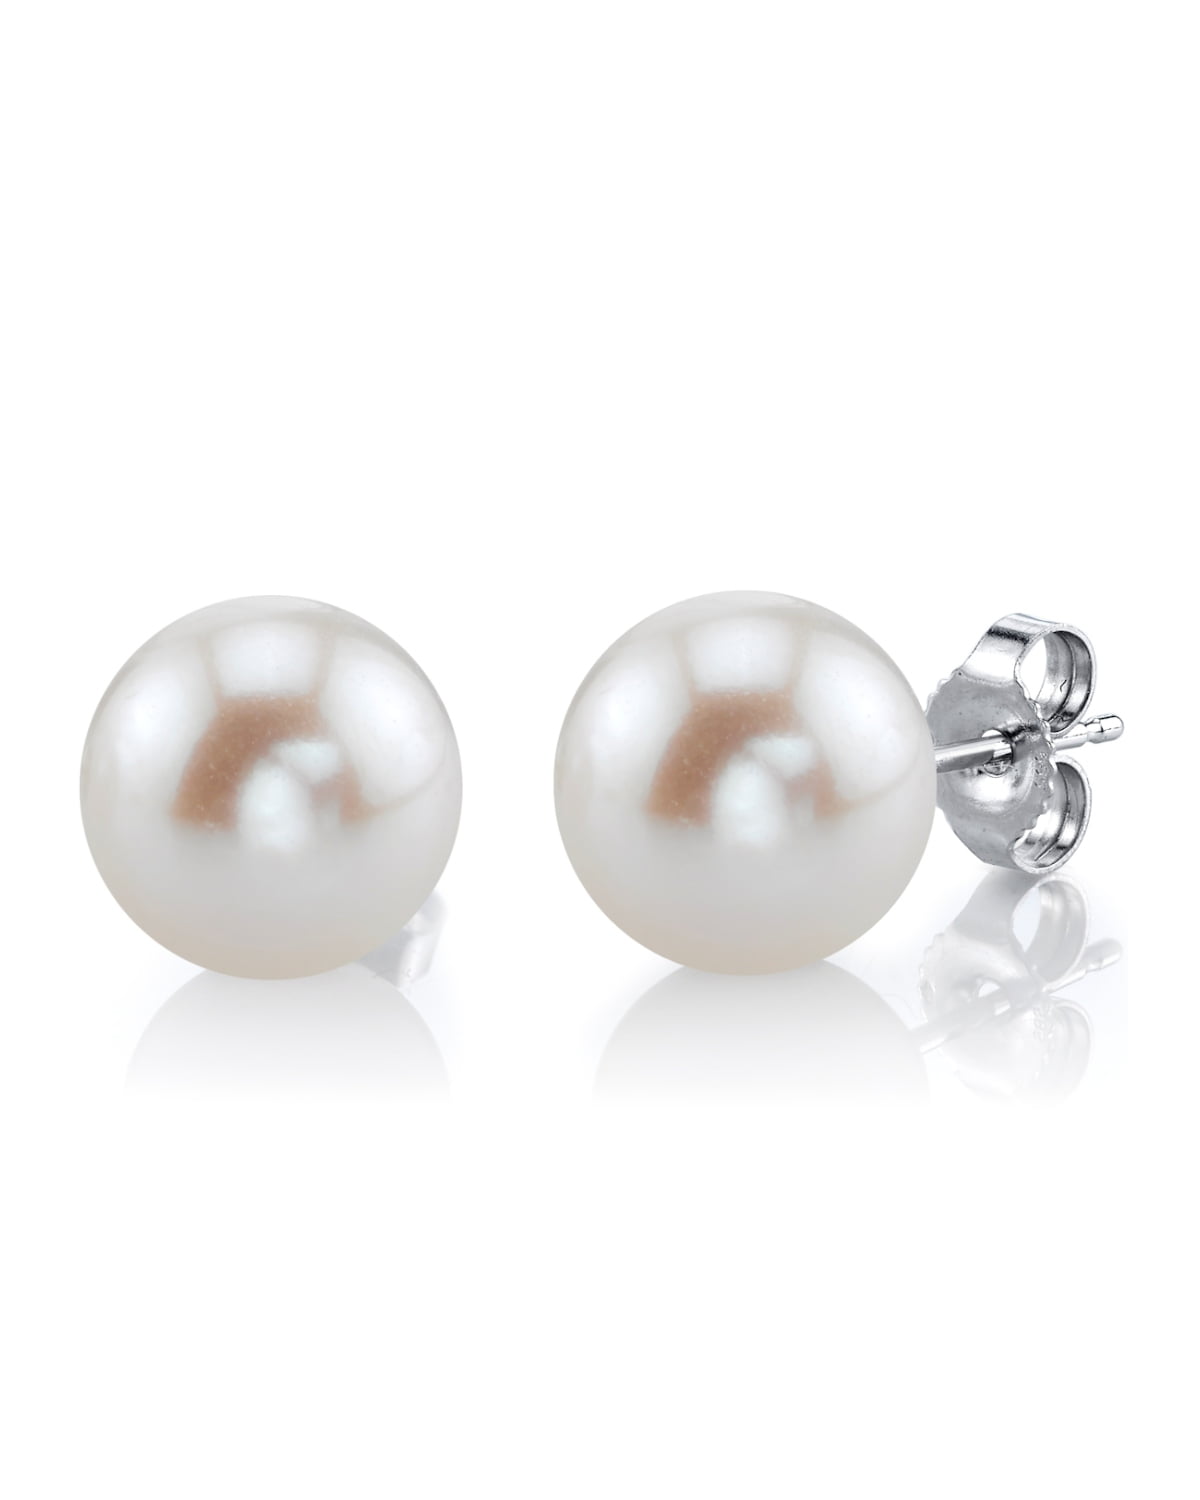 Bodai Cultured Freshwater Pearl Stud Earrings for Women